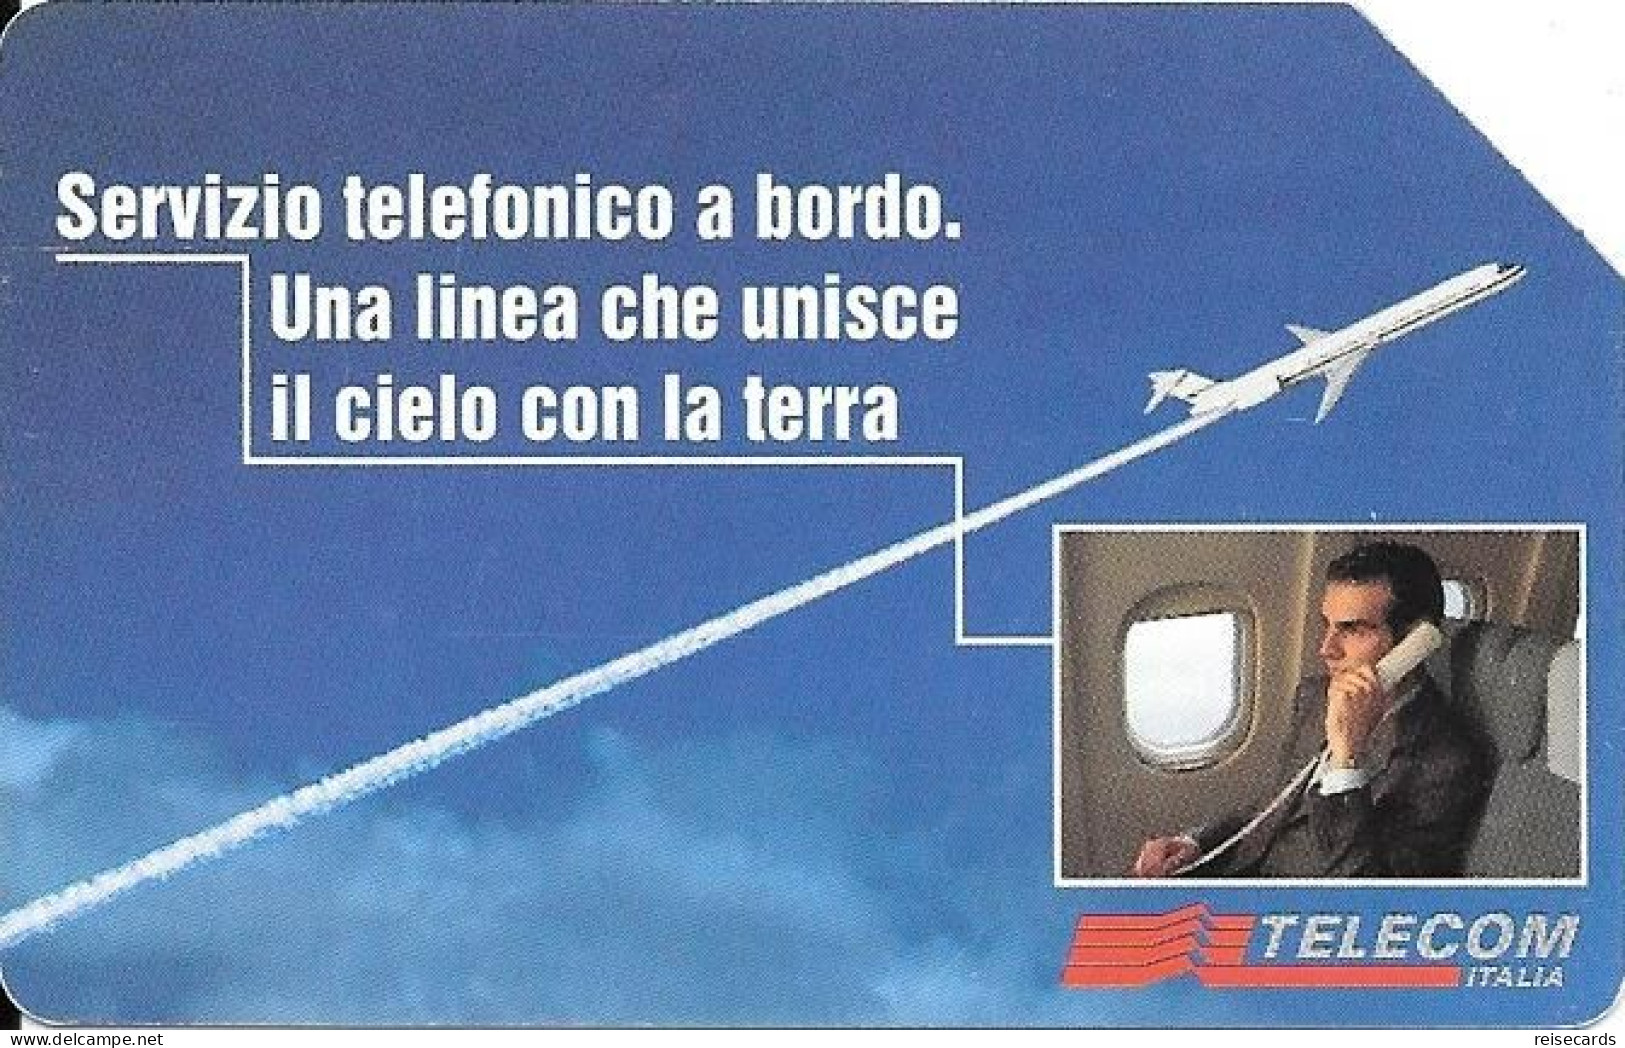 Italy: Telecom Italia - Servizio Telefonico A Bordo - Publiques Publicitaires